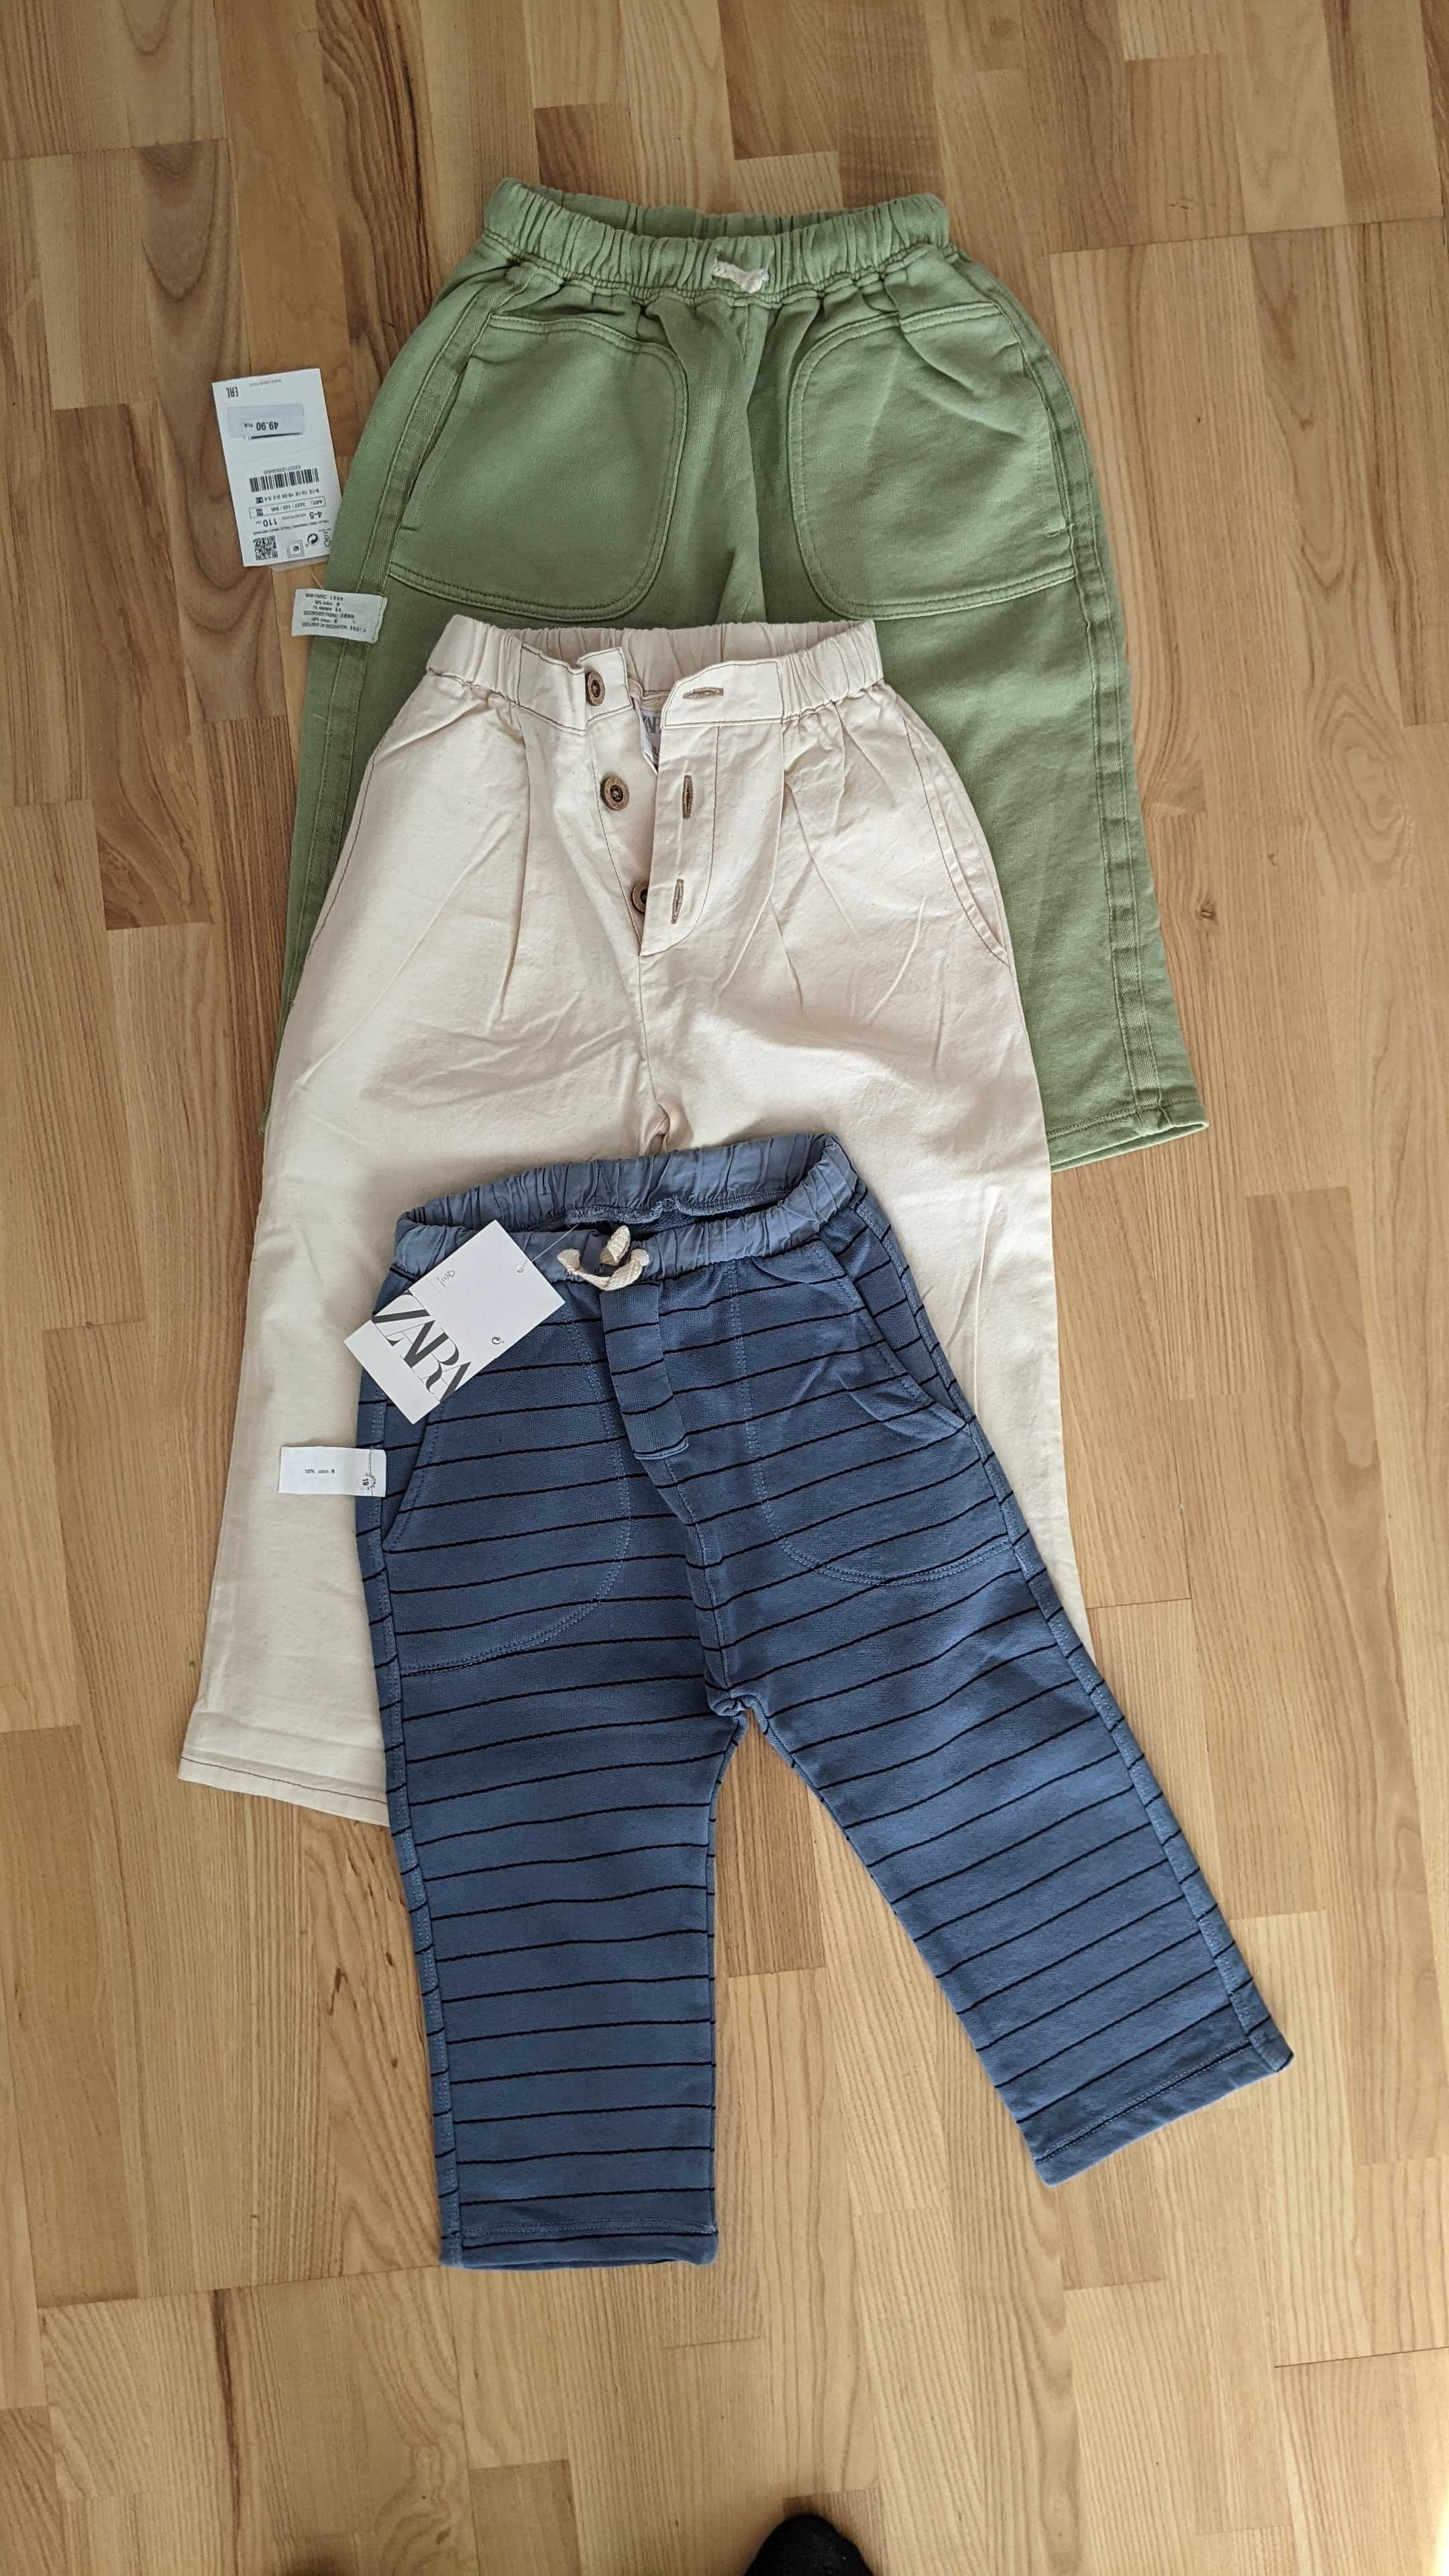 Spodnie Zara chłopiec 4-5 lat 110 cm ; 3 pary spodni